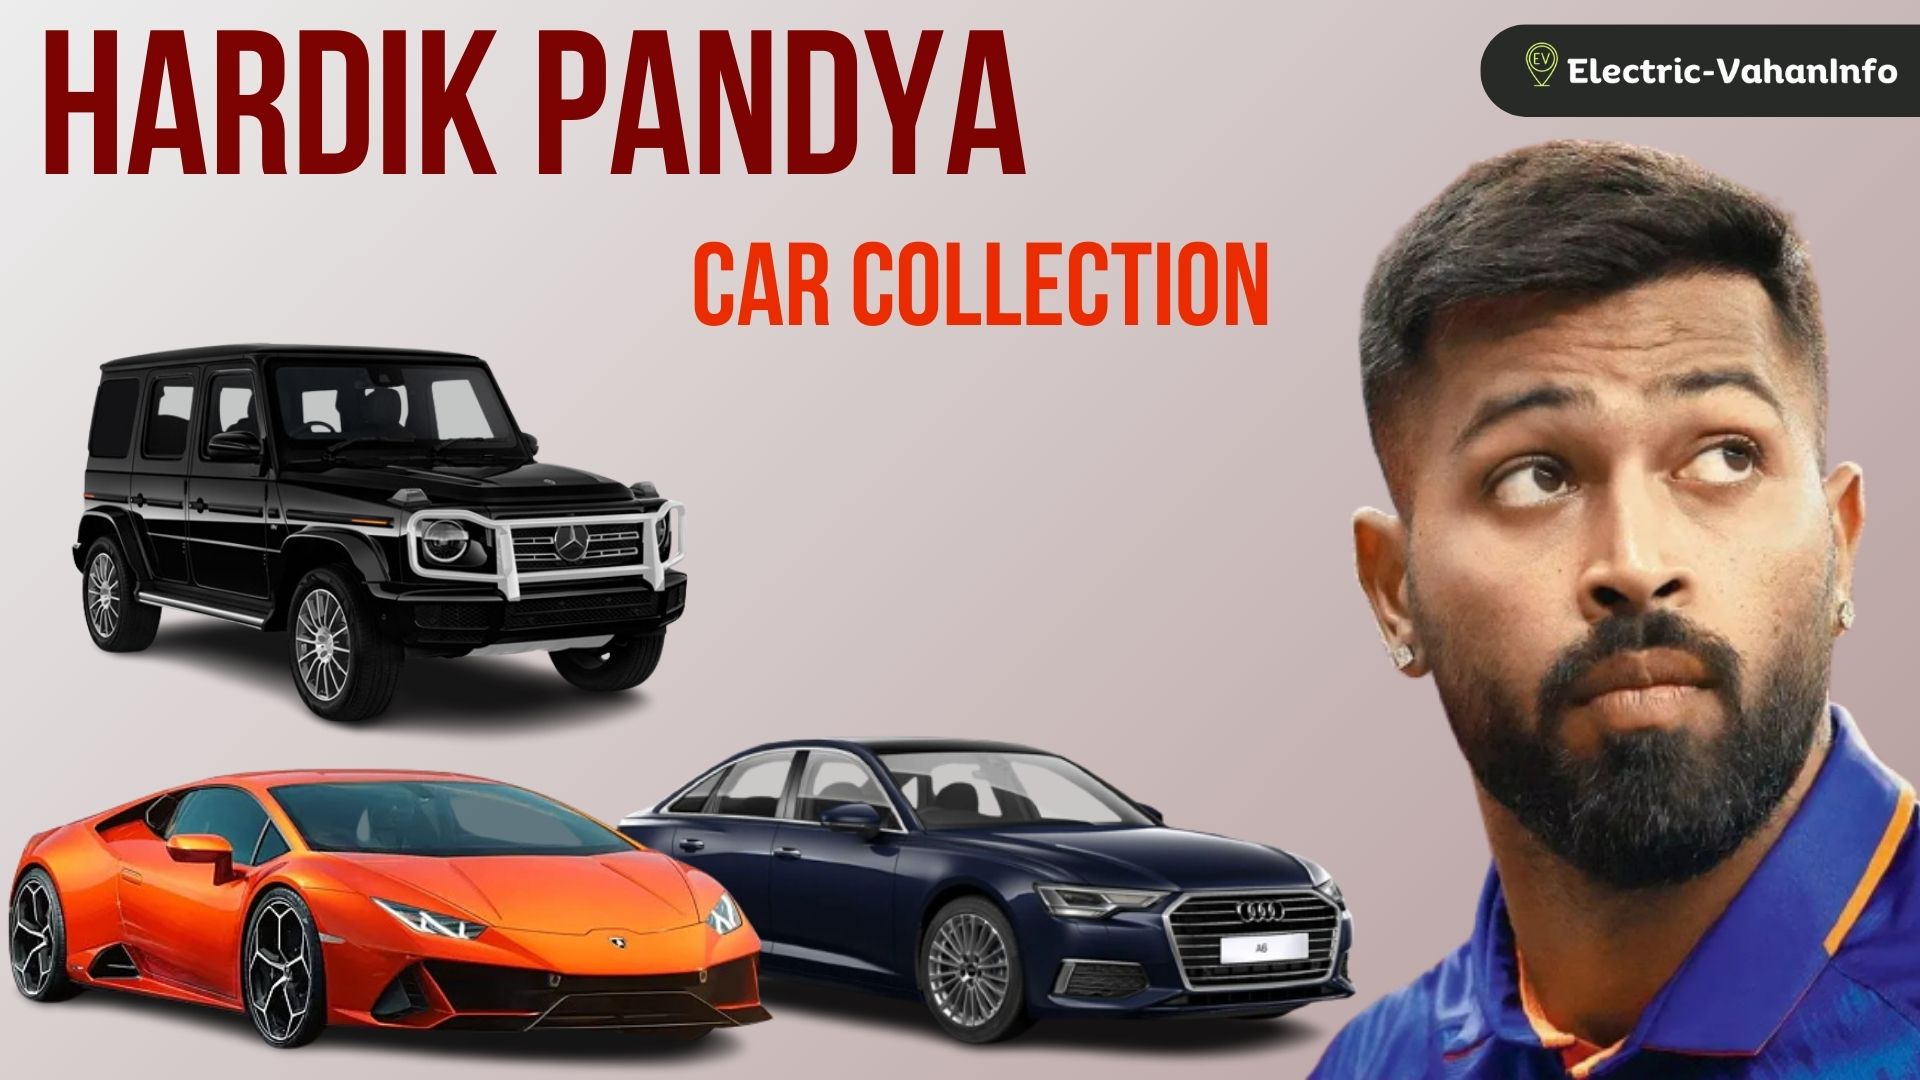 https://electric-vahaninfo.com/car-collection-of-hardik-pandya-petrol-and-electric/